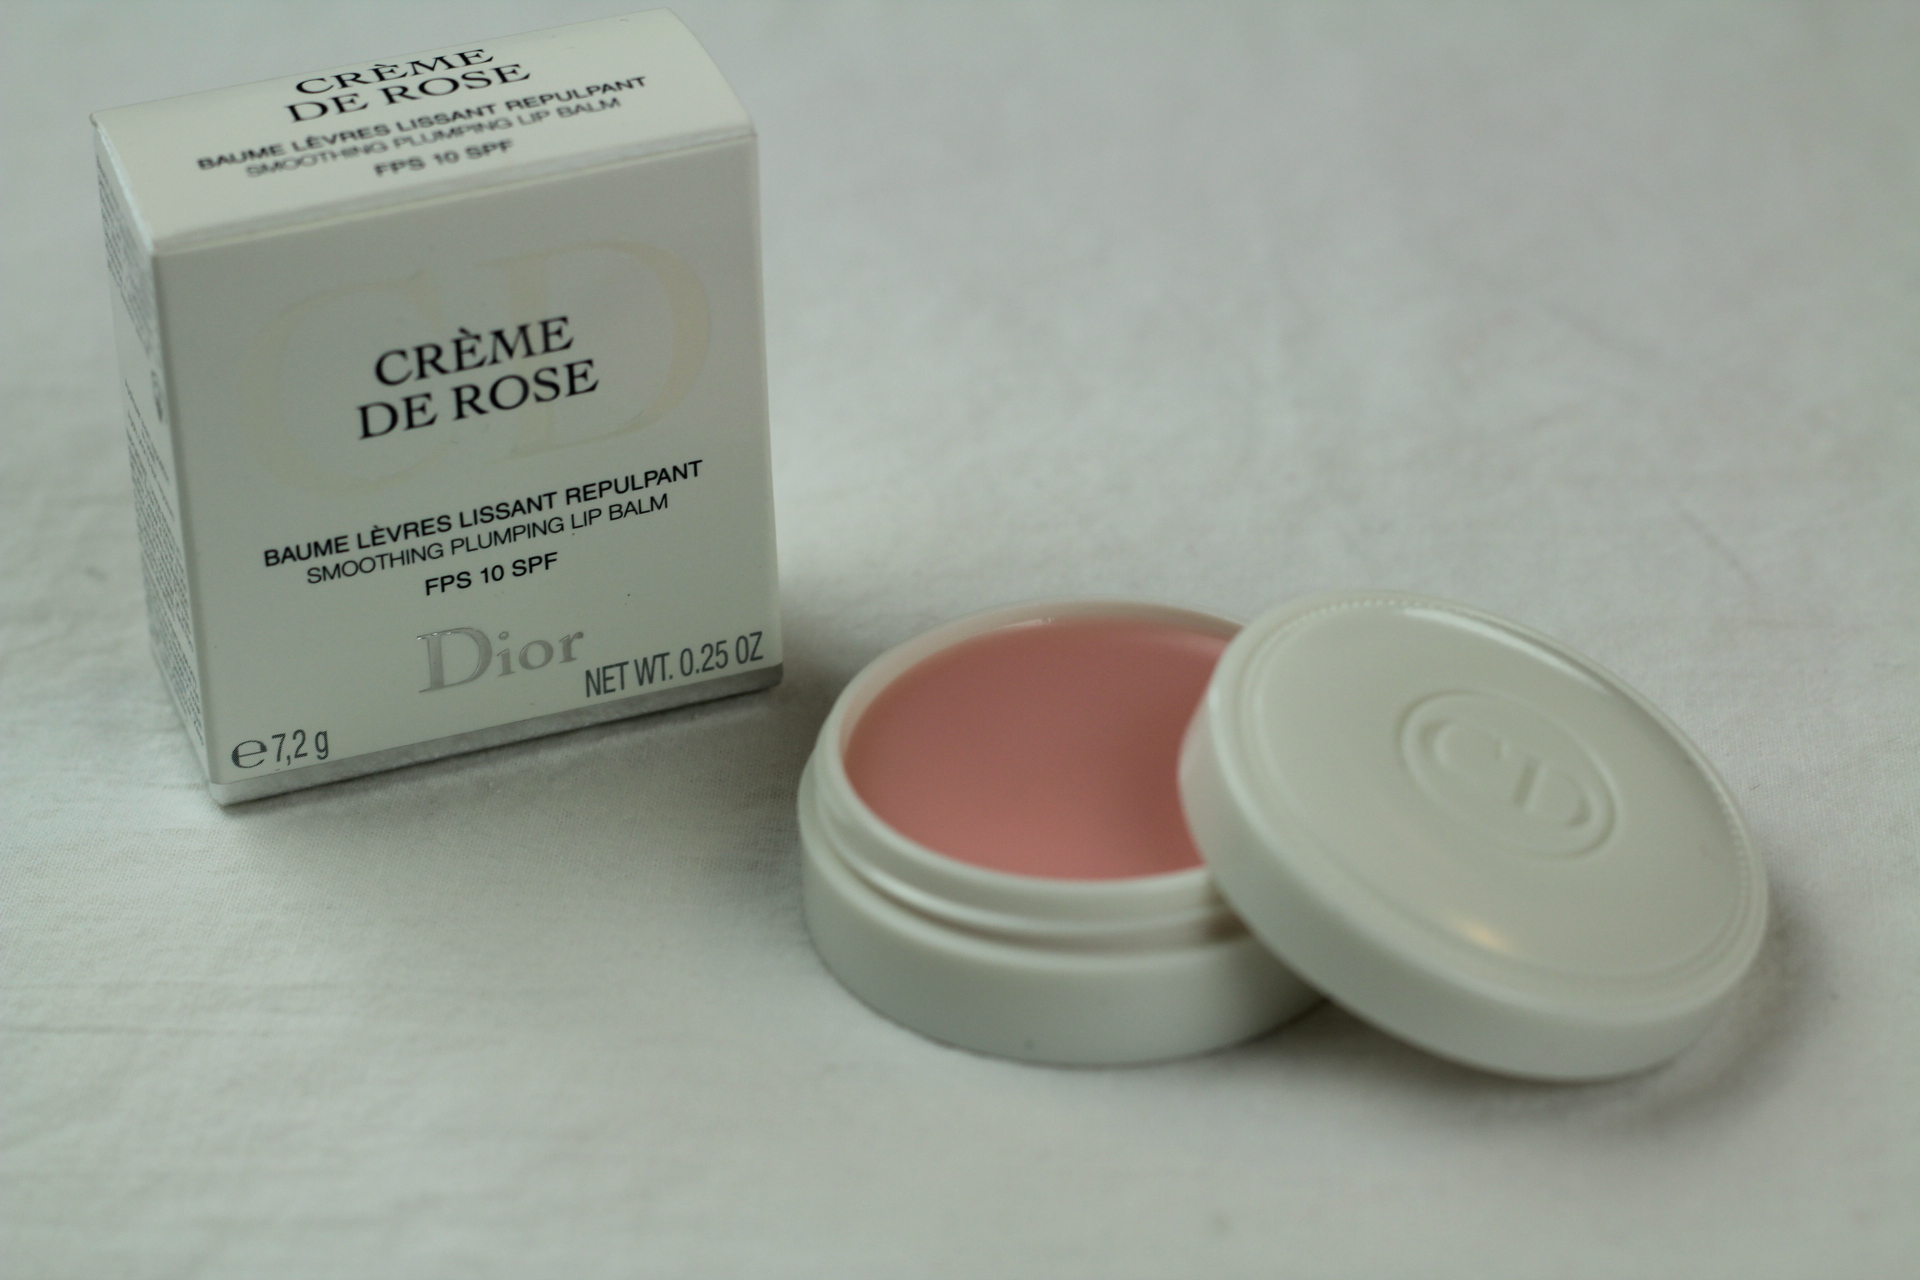 dior creme de rose smoothing plumping lip balm